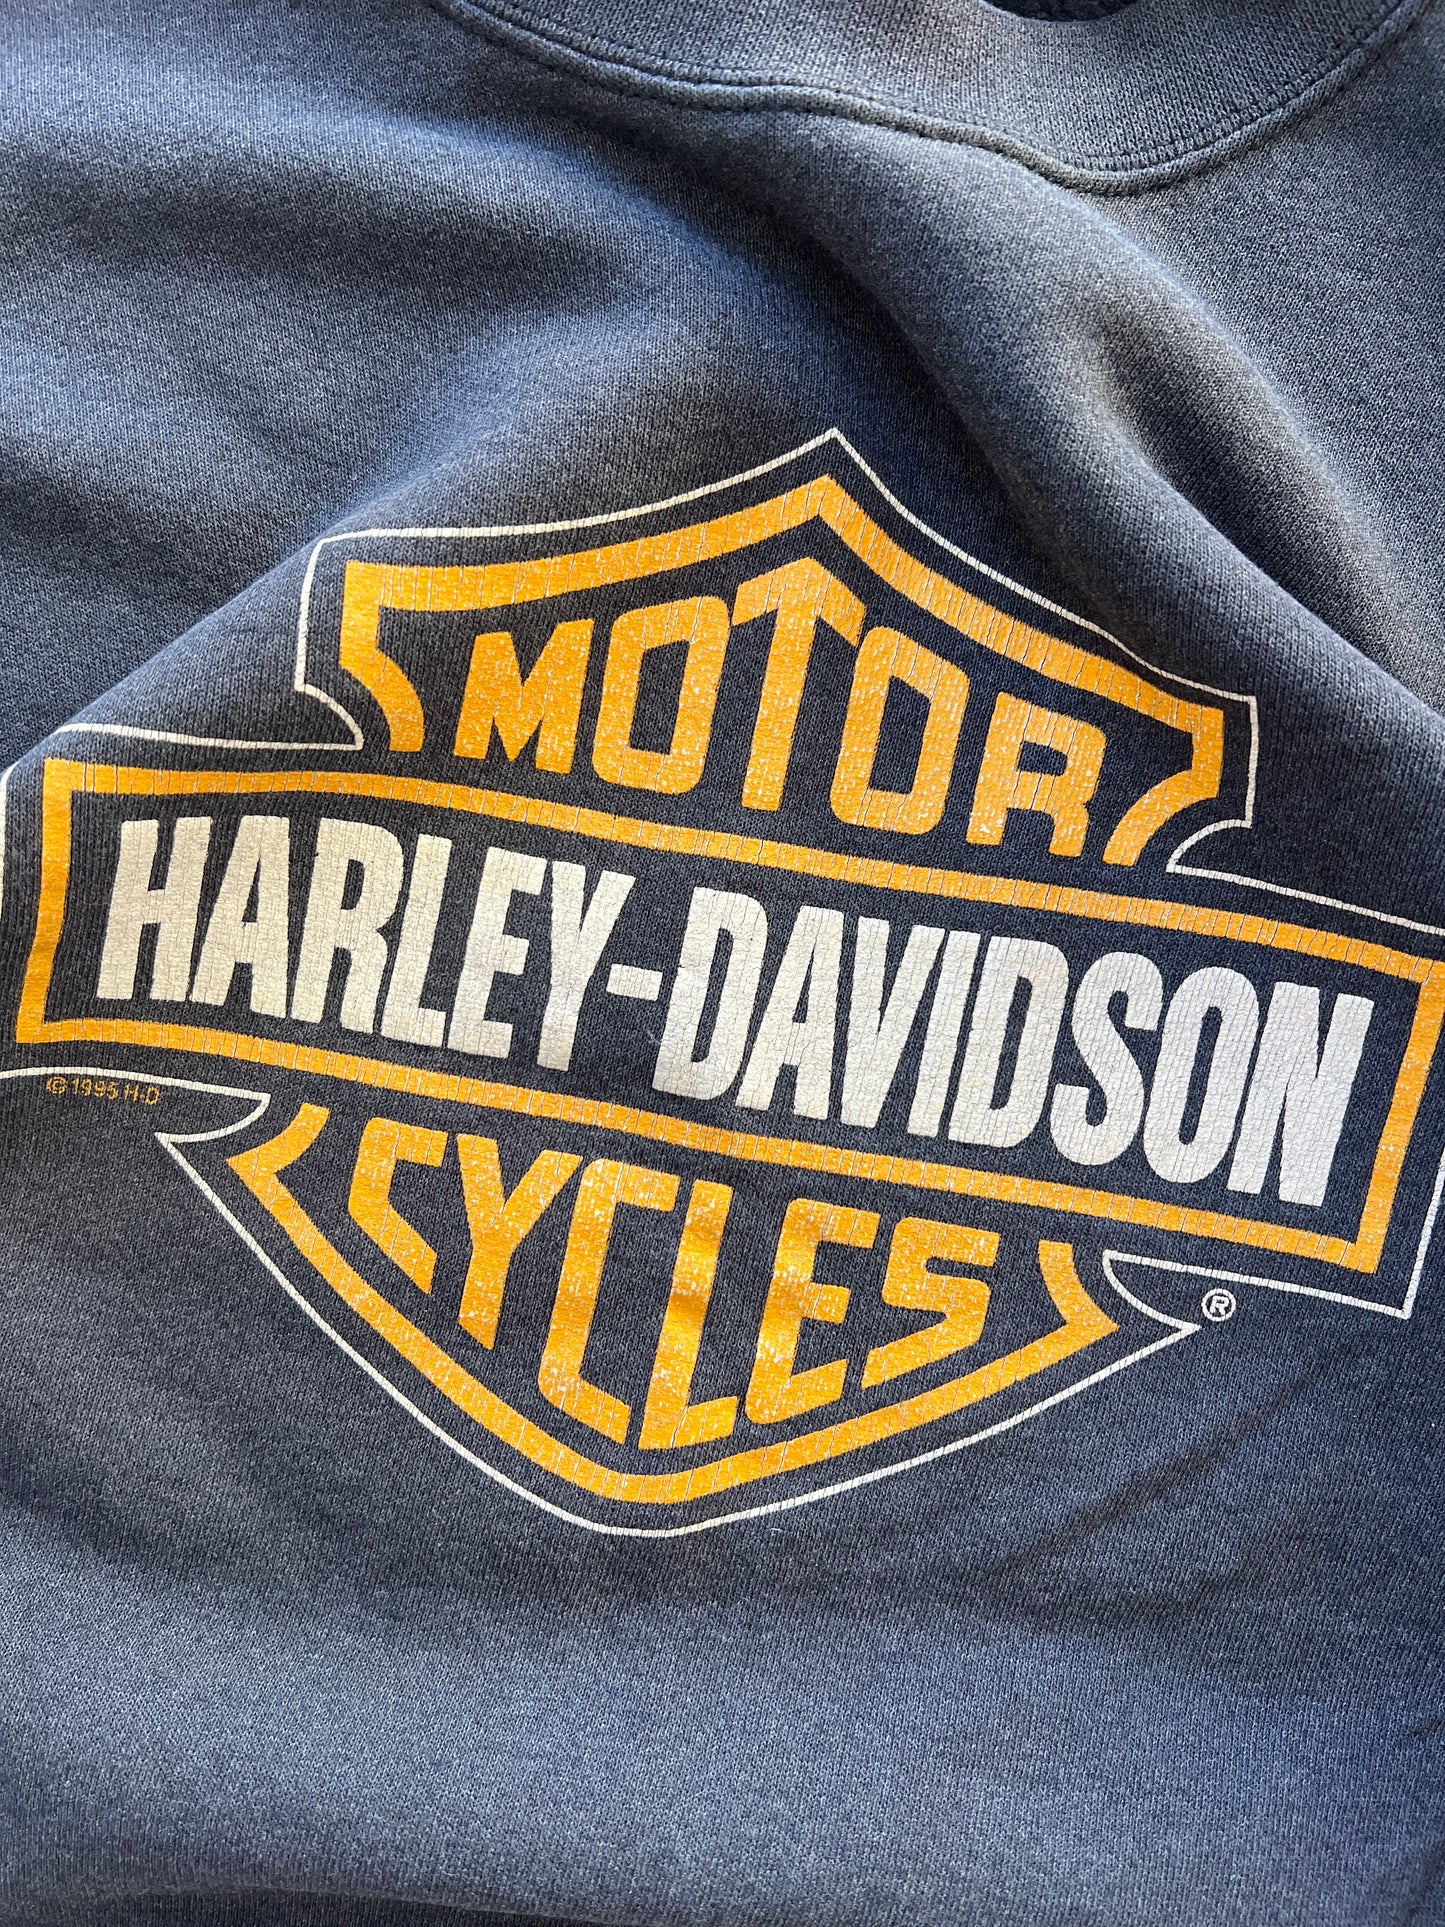 Vintage Harley Davidson Crew - L